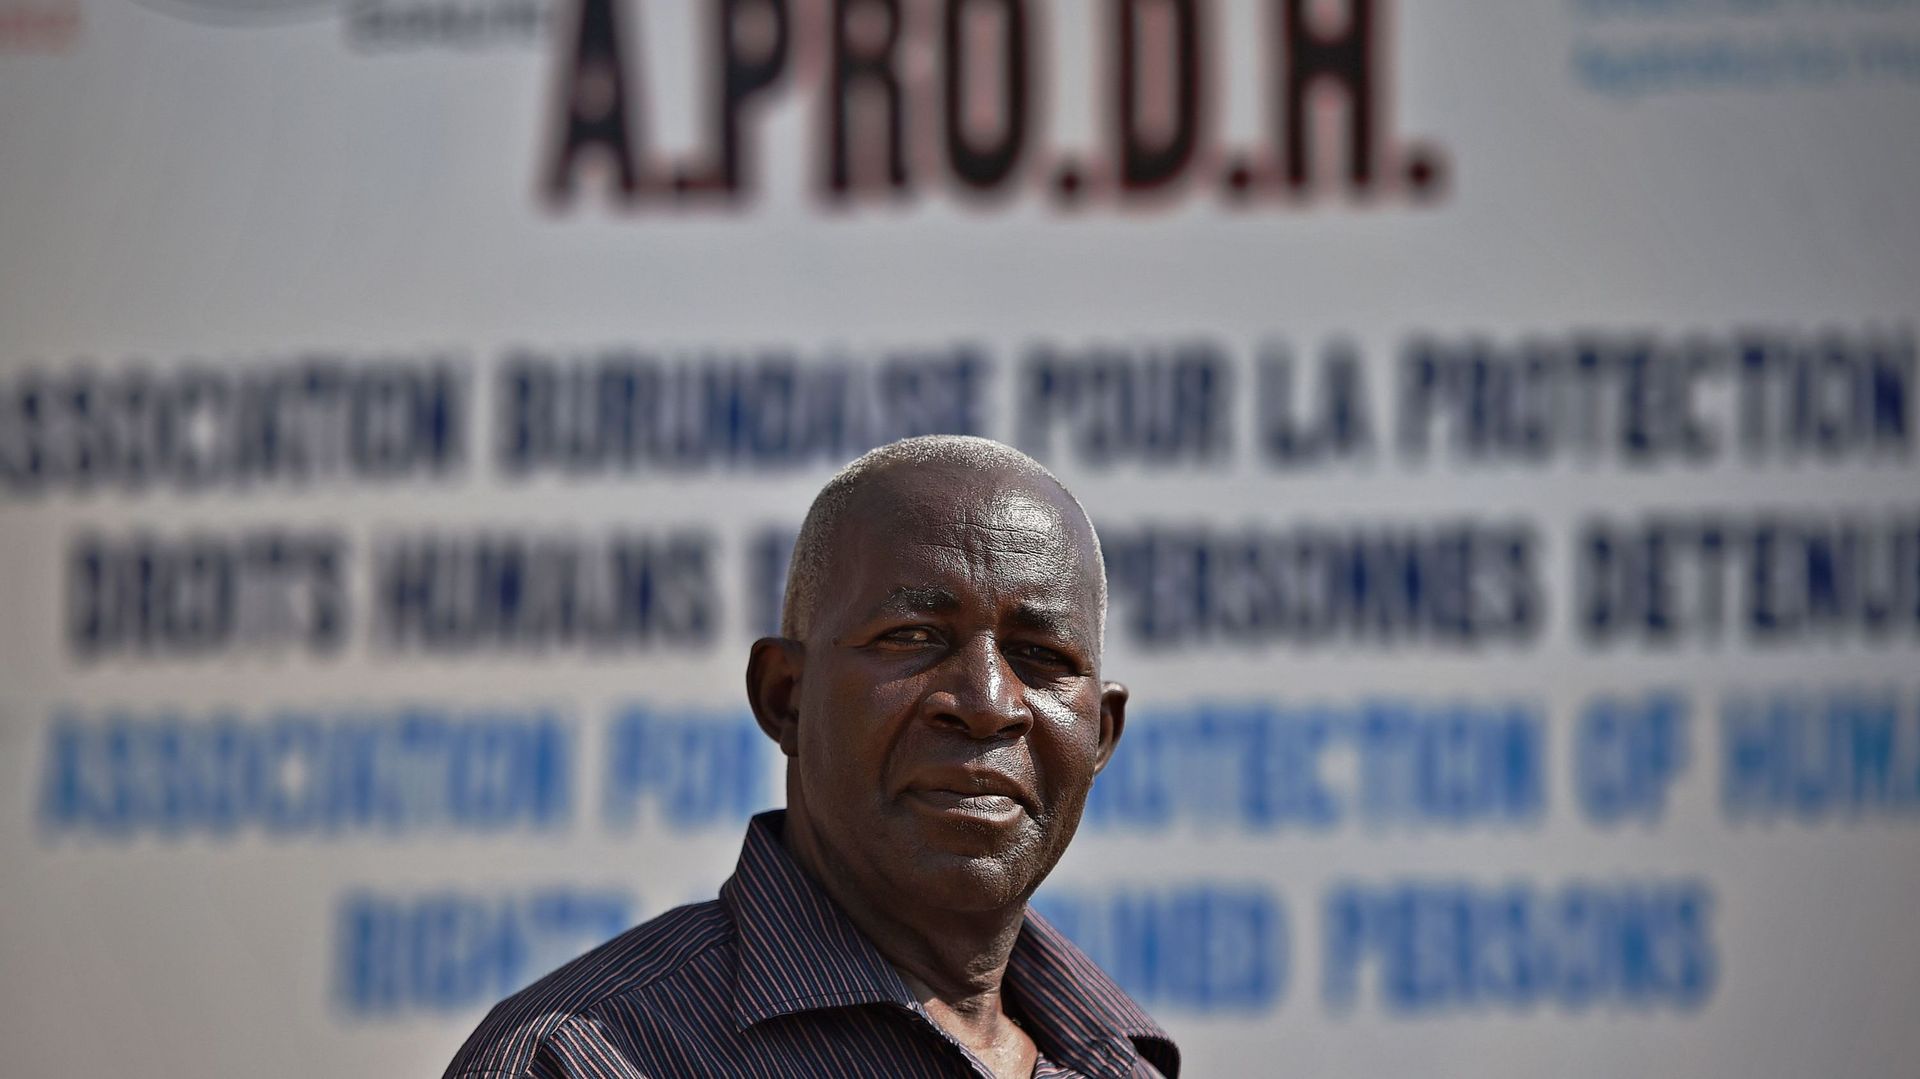 Le défenseur des droits de l'Homme Mbonimpa a quitté le Burundi pour des soins en Belgique